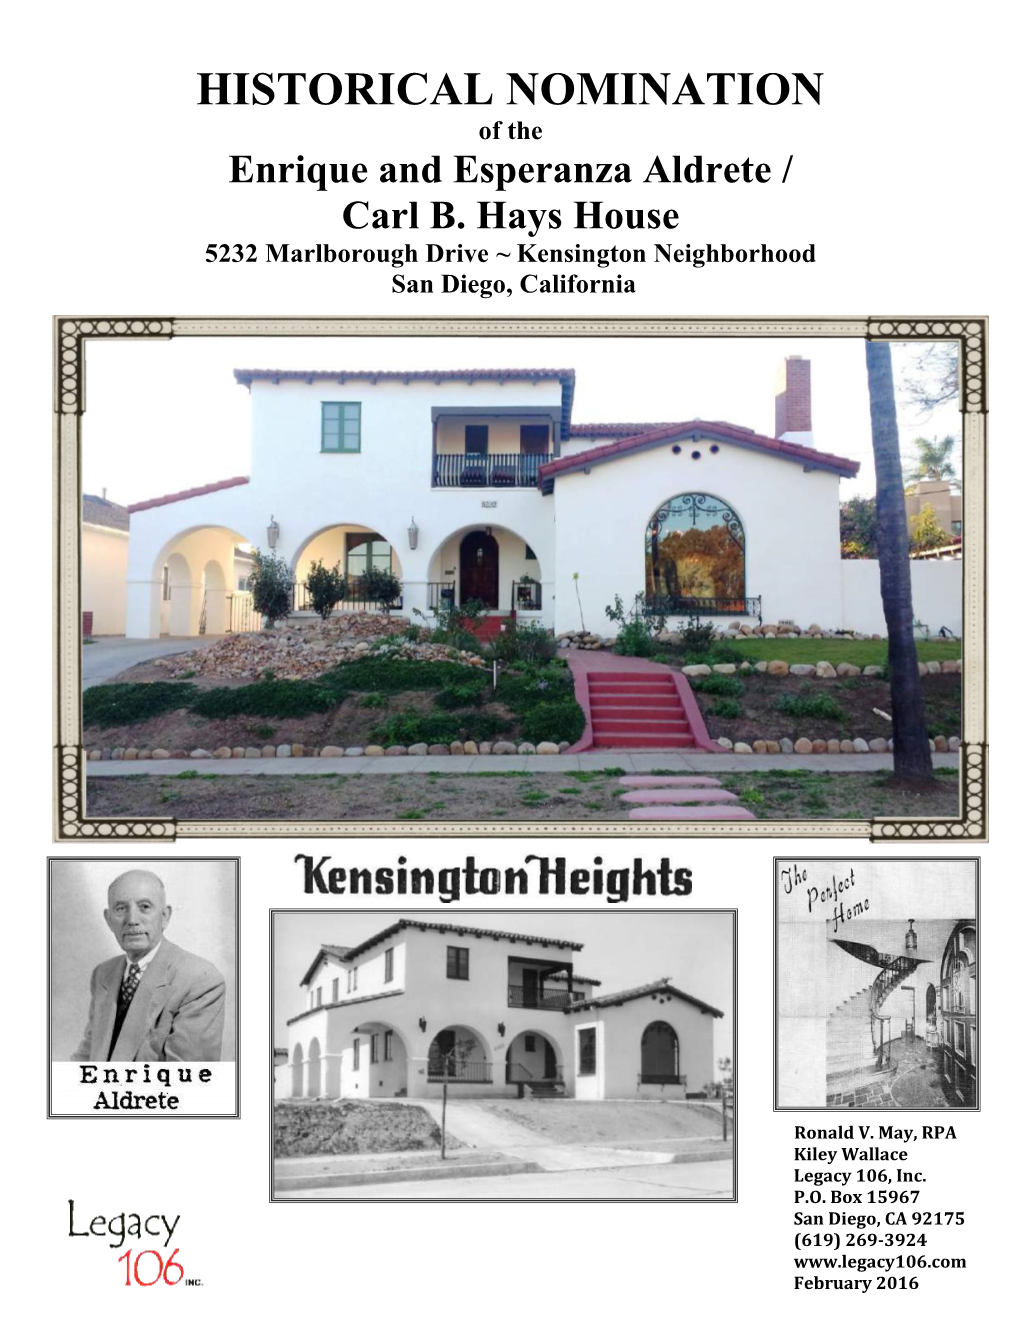 HISTORICAL NOMINATION of the Enrique and Esperanza Aldrete / Carl B